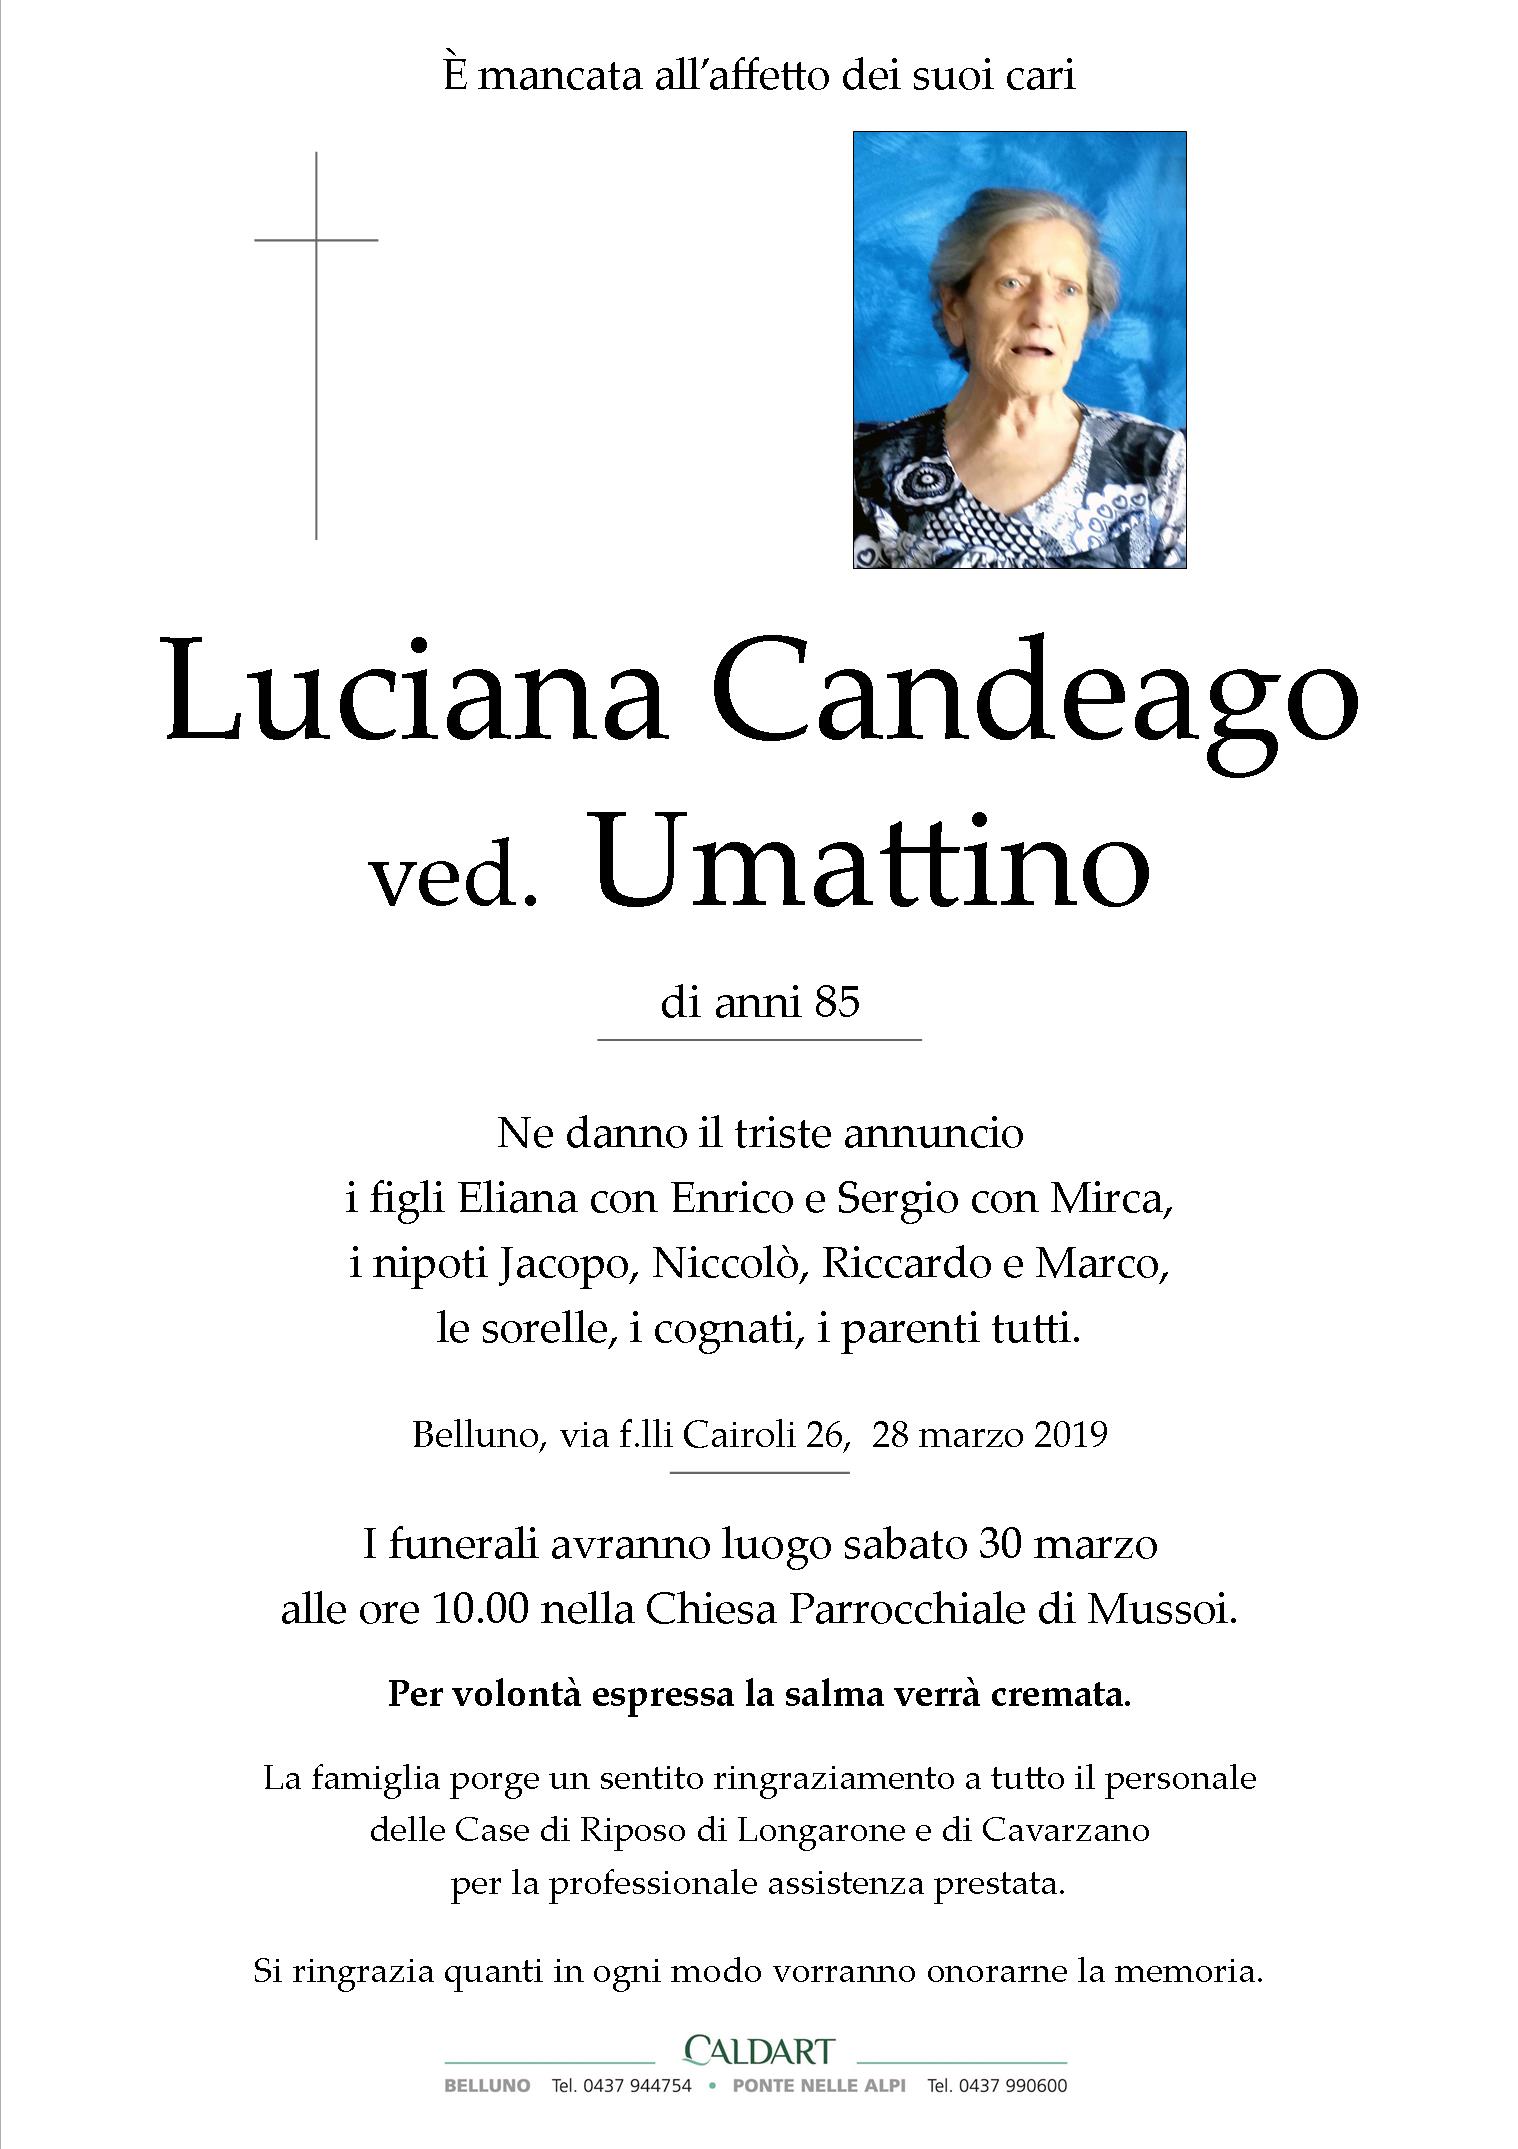 Candeago Luciana